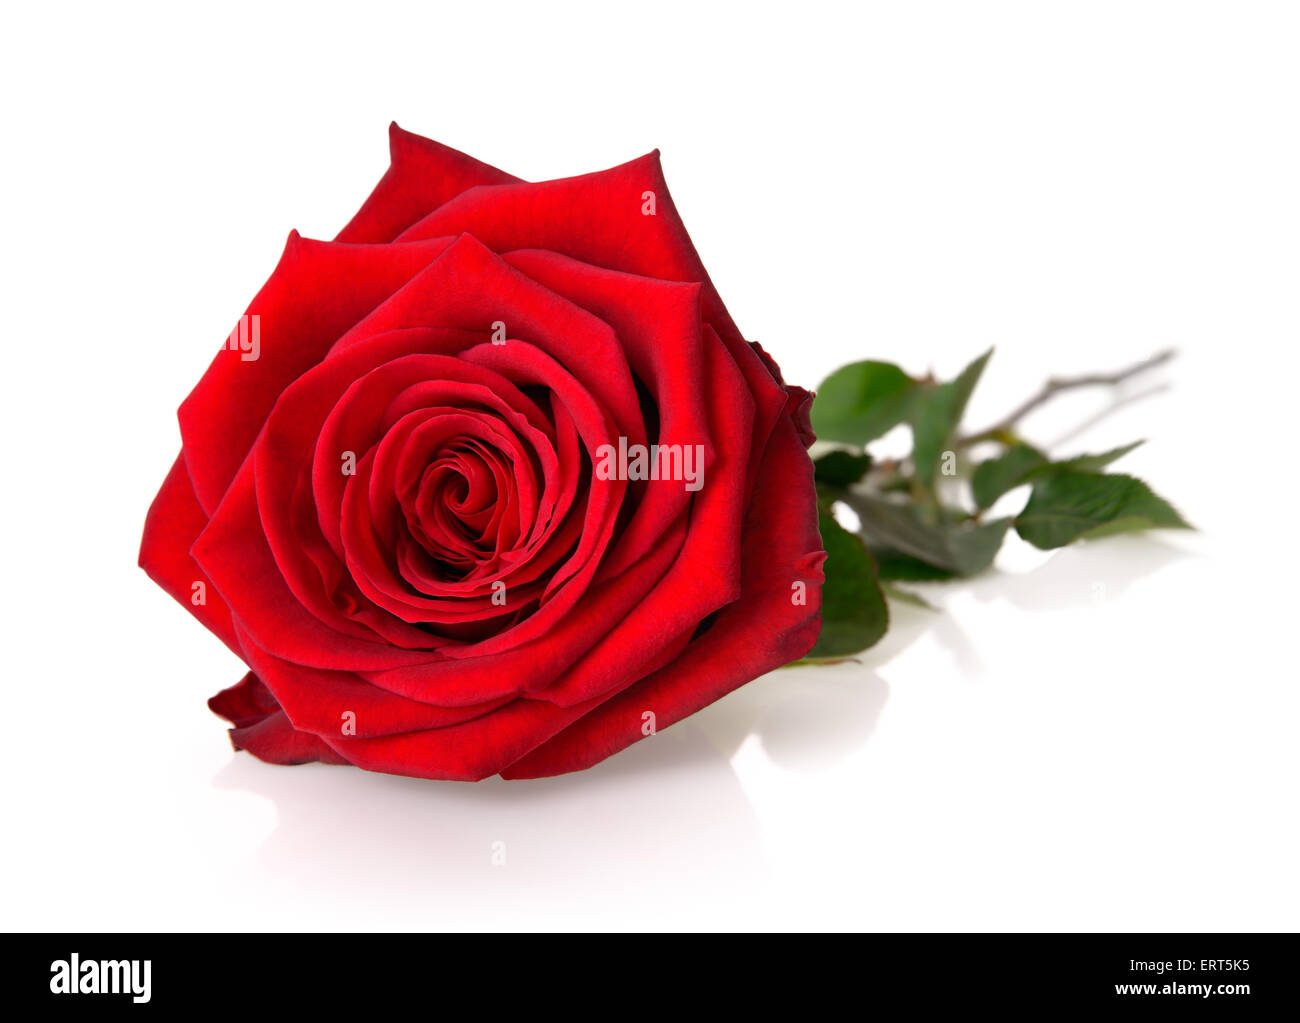 L'essor, entièrement rose rouge magnifique avec tige et feuilles sur fond blanc, avec la réflexion Banque D'Images